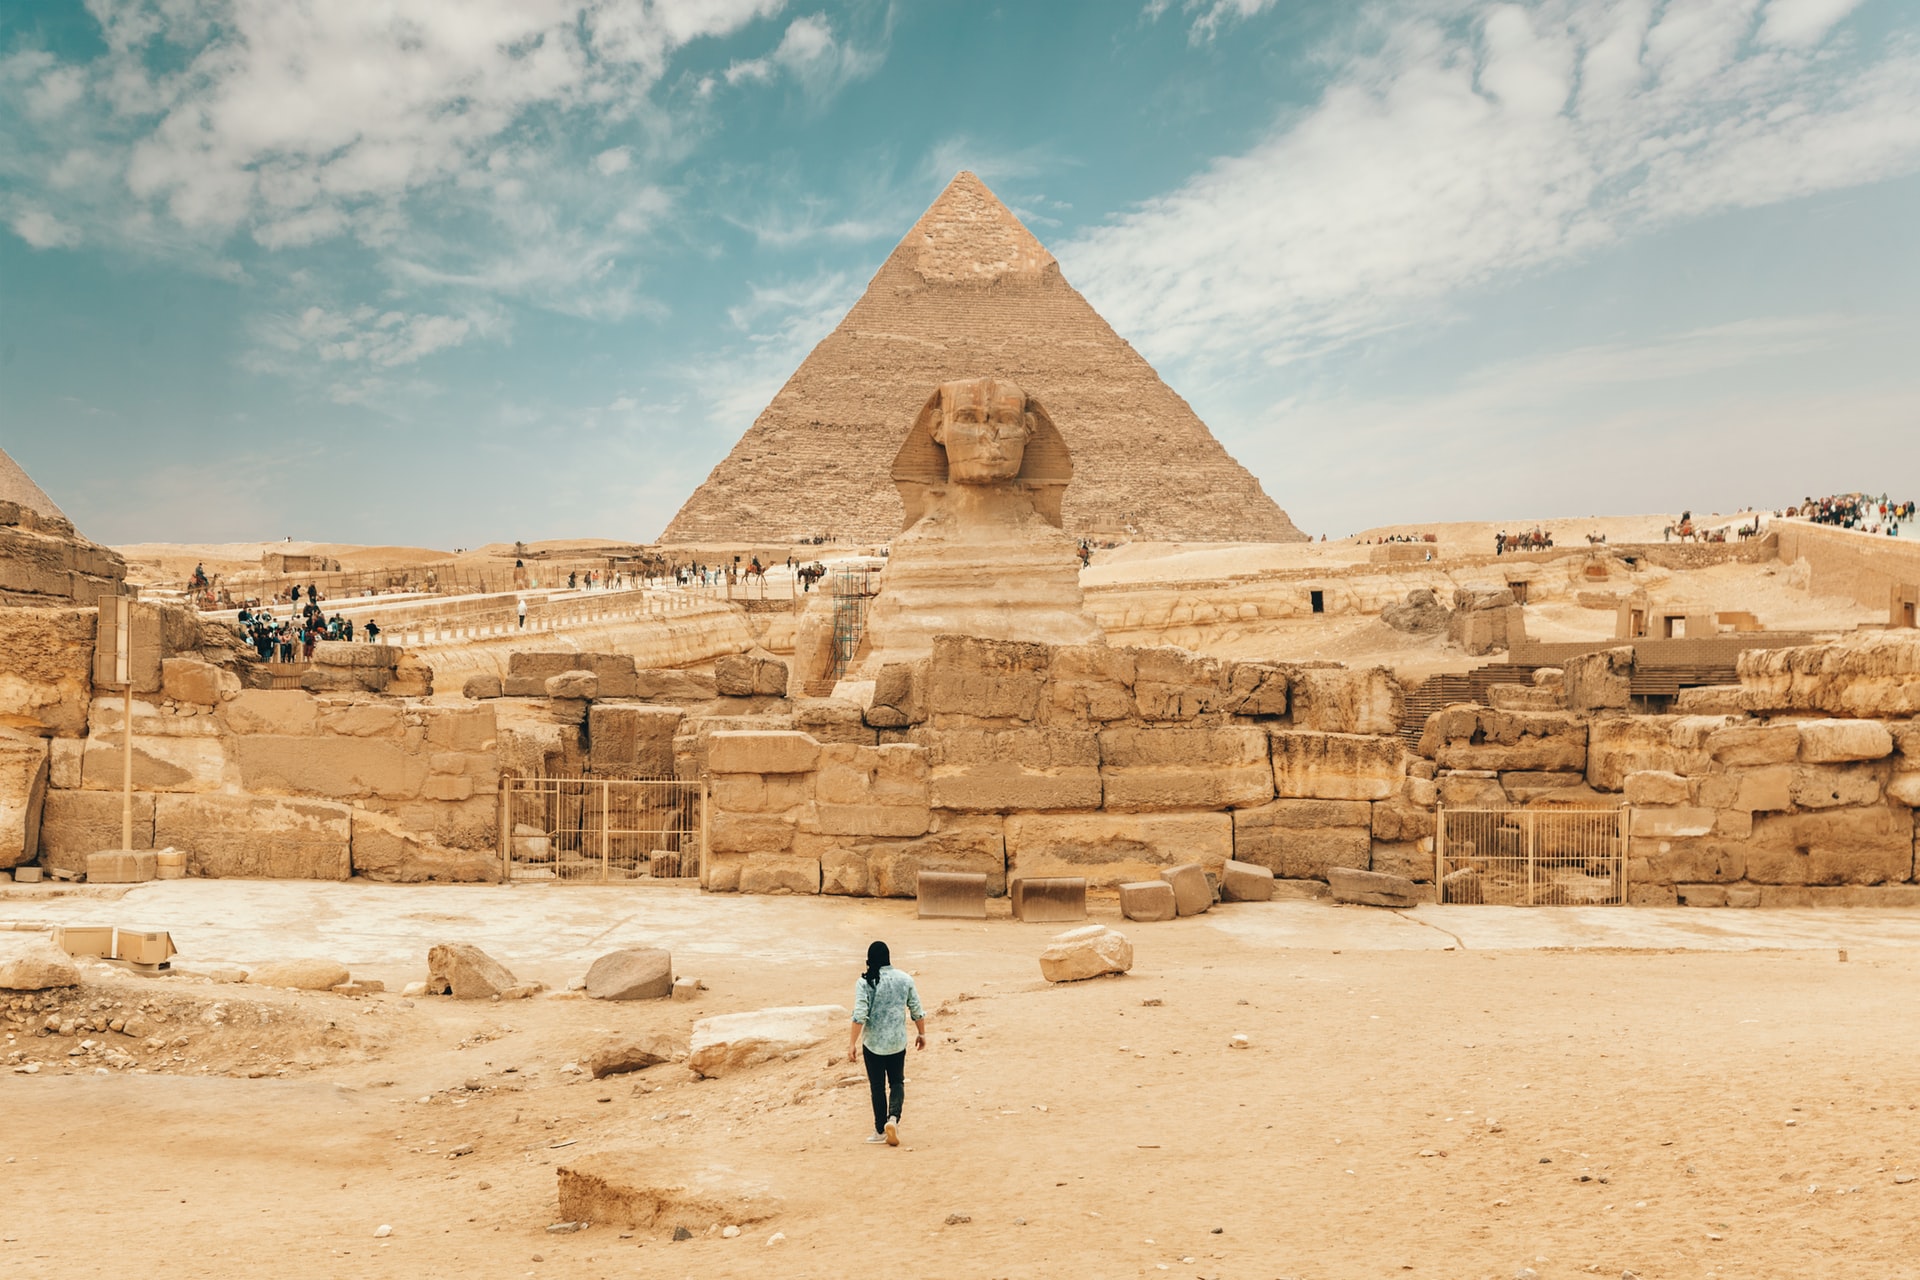 Dovolenka v Egypte pri pyramíde